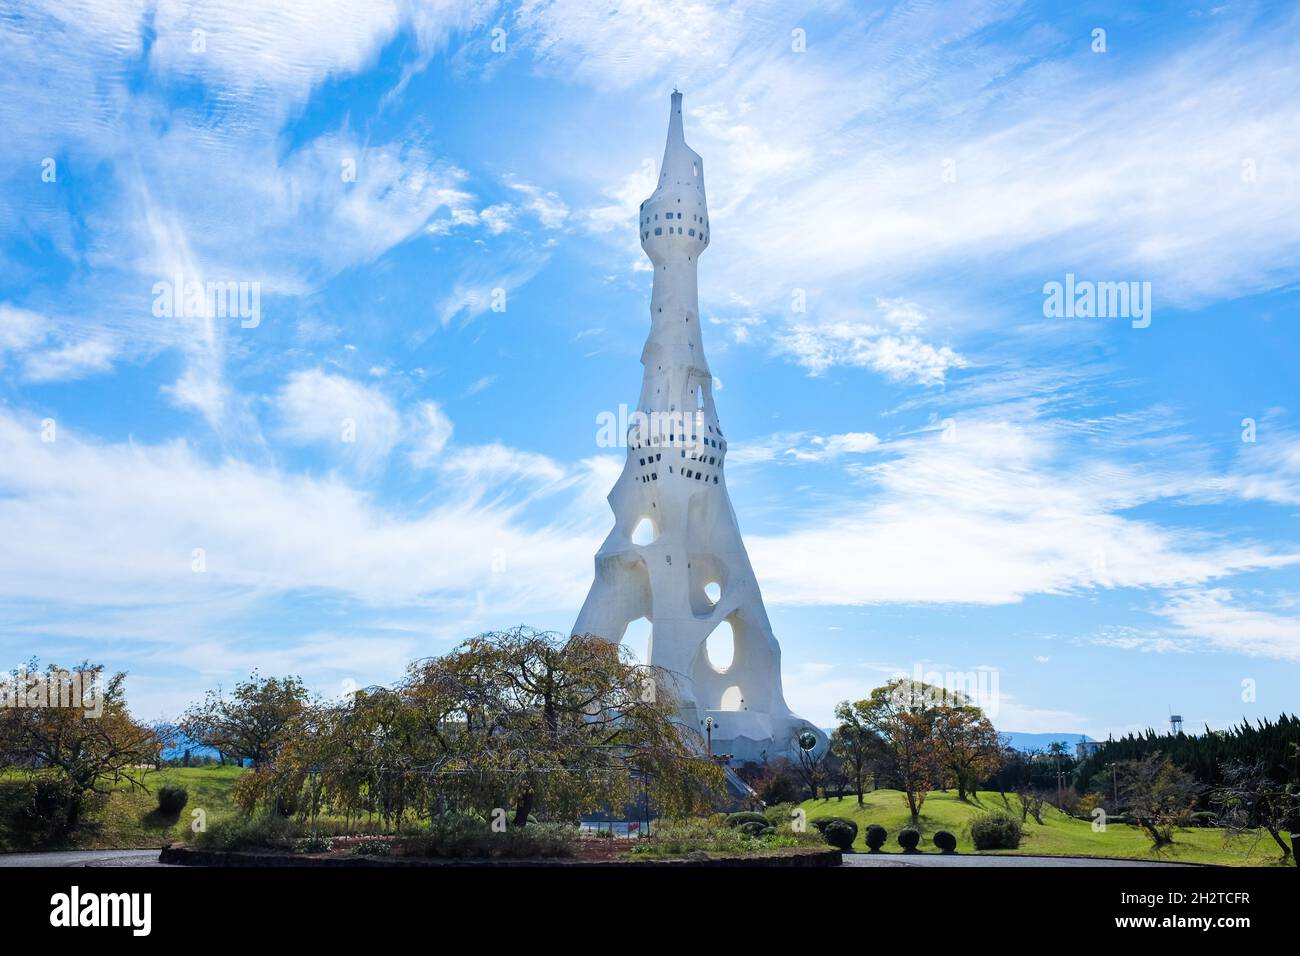 La Gran Torre de la Paz (también conocida como la Torre de la Paz PL) ubicada en la sede de la Iglesia de la Libertad Perfecta en Tondabayashi, Osaka, Japón. Foto de stock